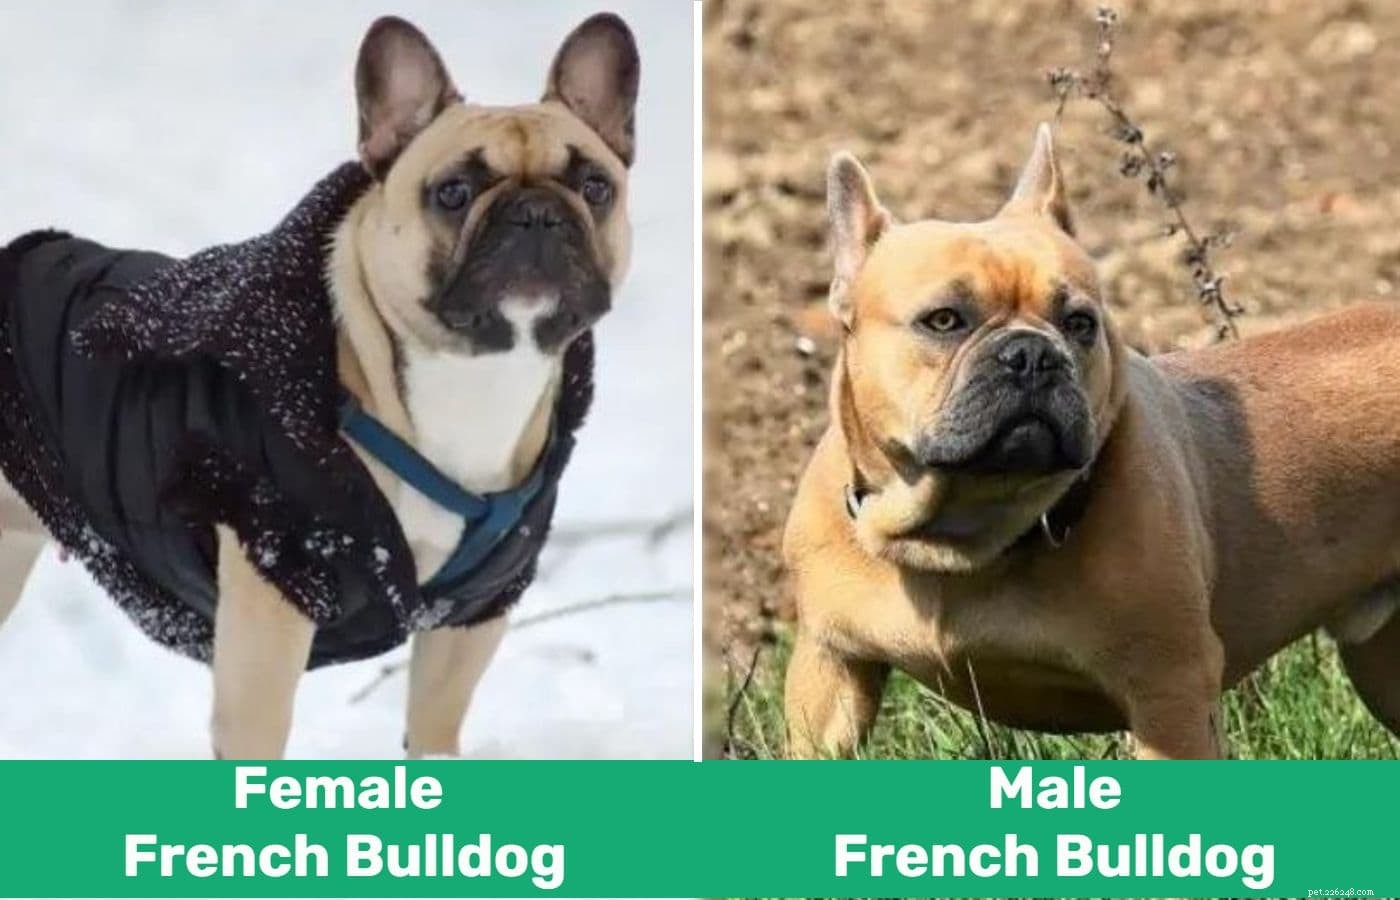 Man vs kvinnlig fransk bulldogg:Vad är skillnaderna?